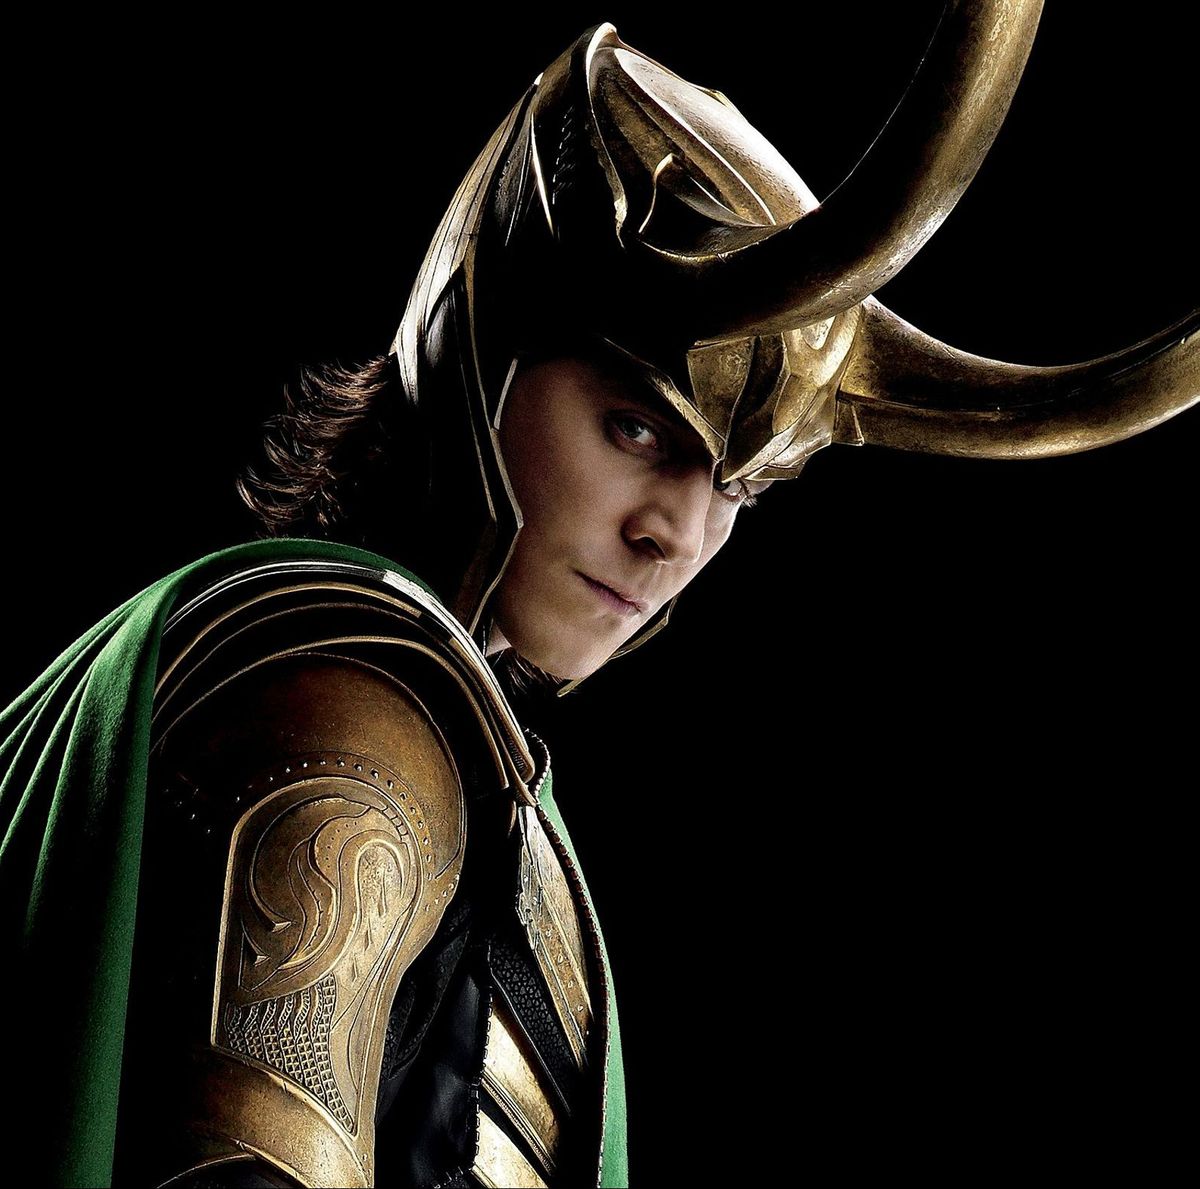 How Avengers: Endgame impacts Marvel's Loki TV series starring Tom